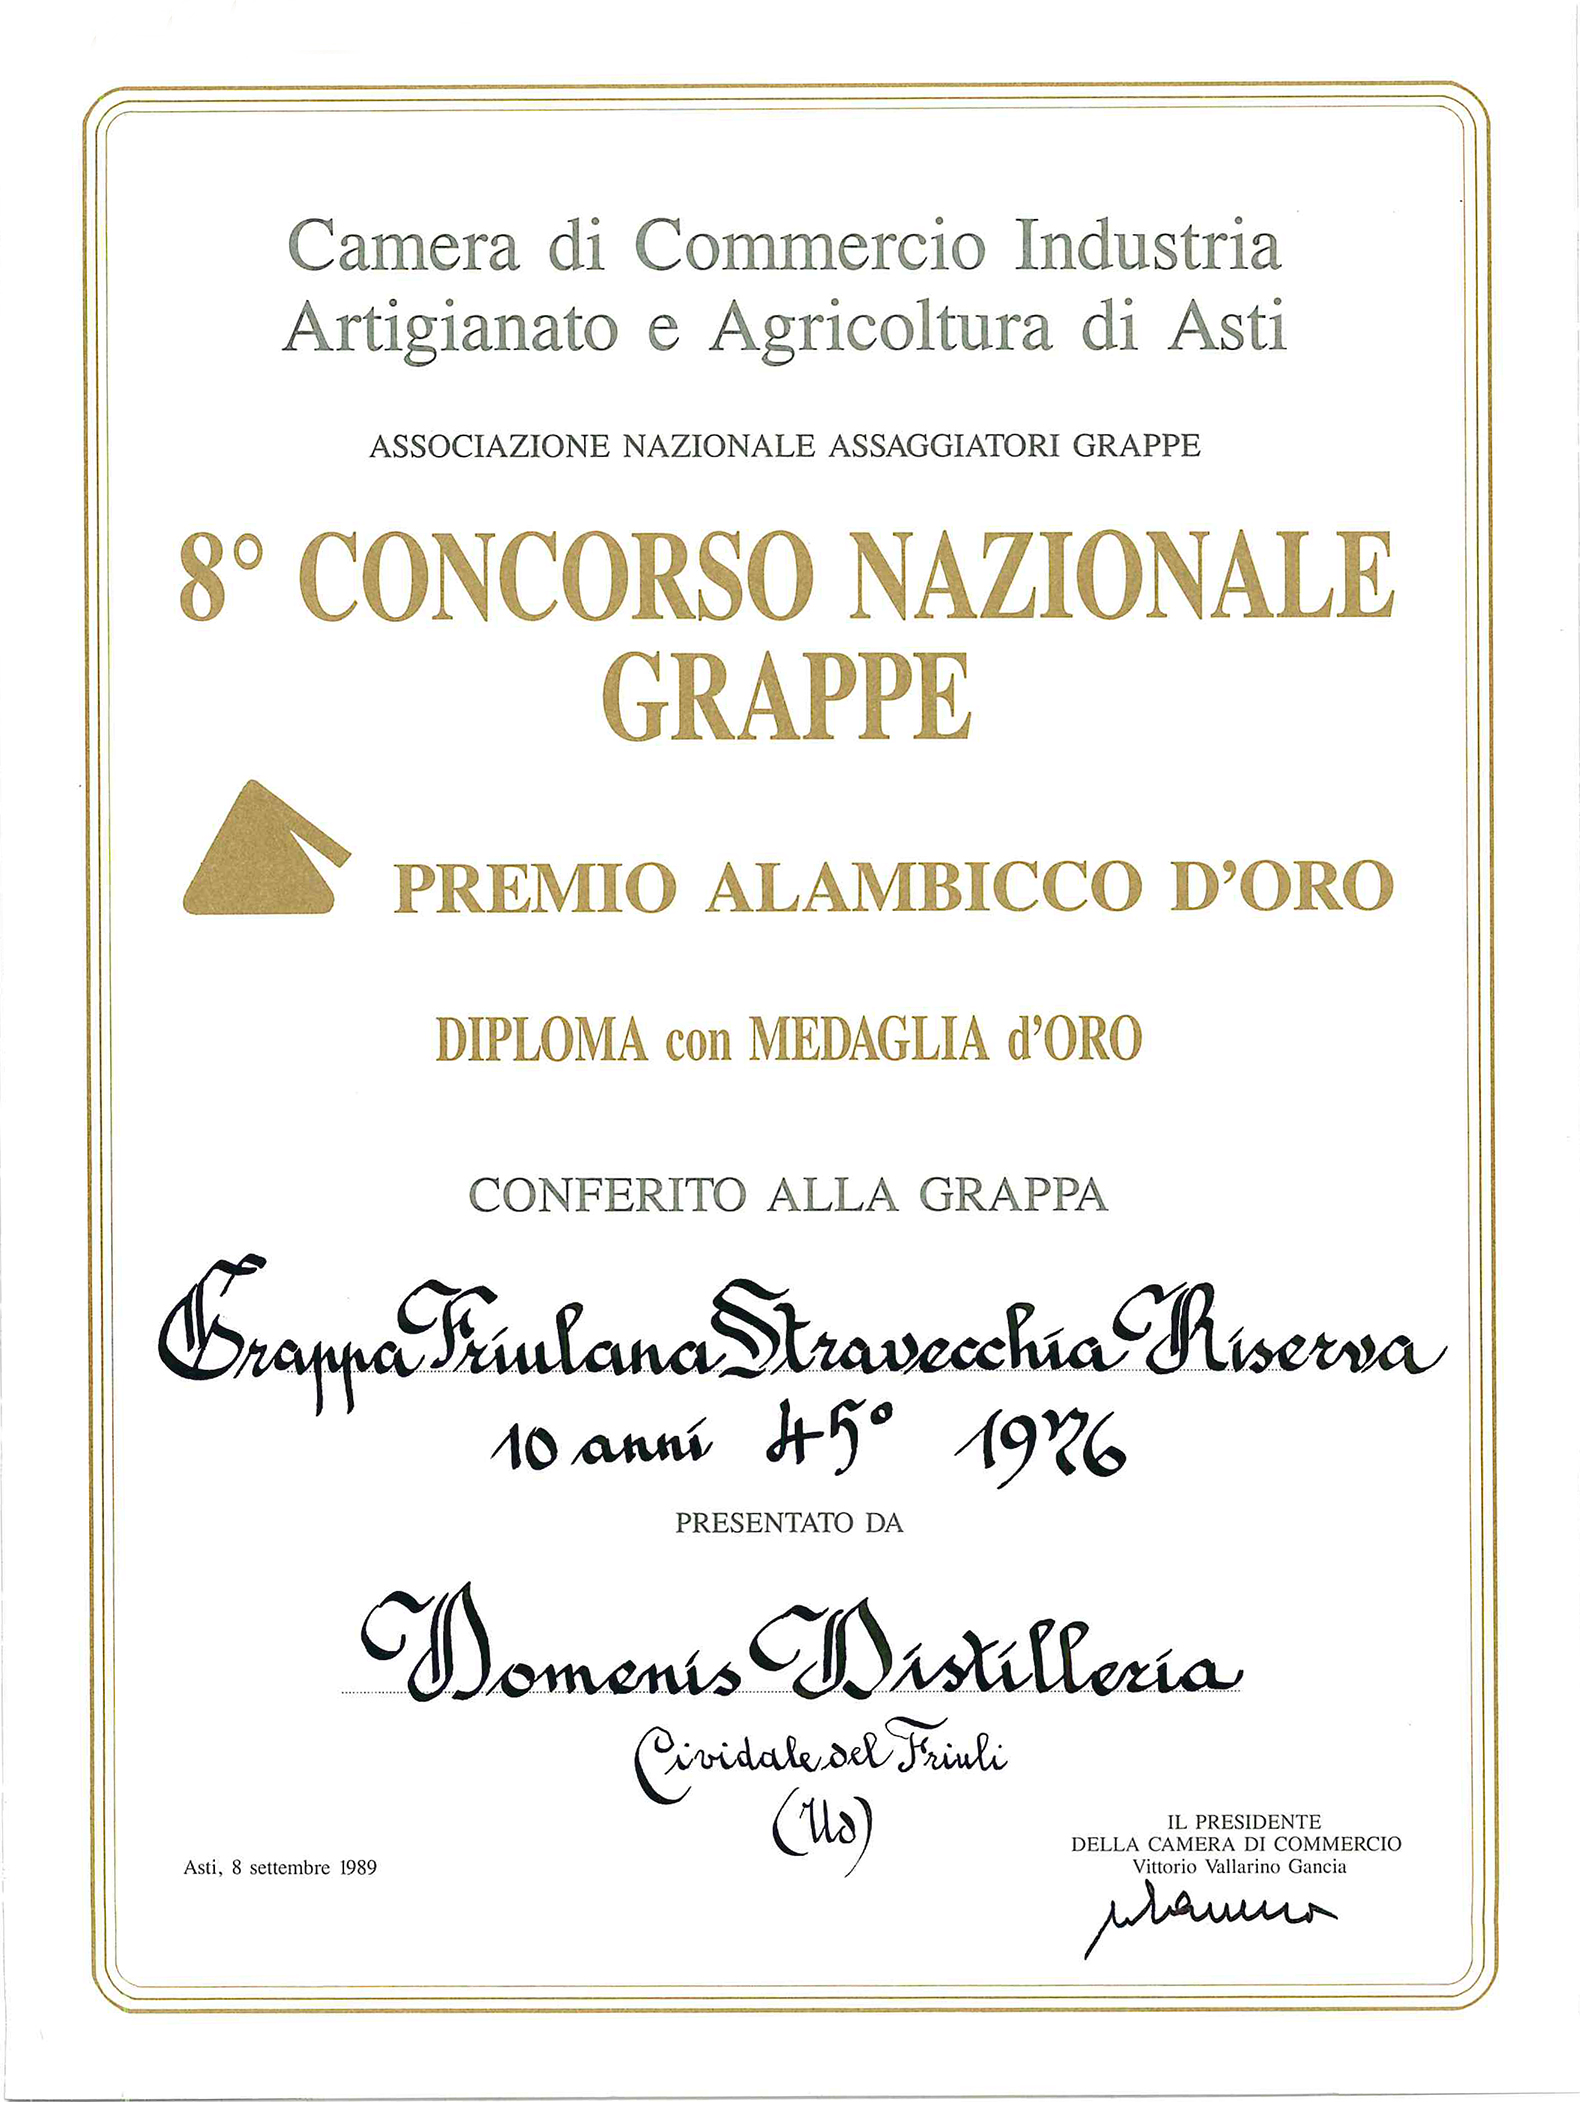 Premio Alambicco d’Oro 1989 – Grappa Friulana Stravecchia Riserva 10 anni 45° 1976